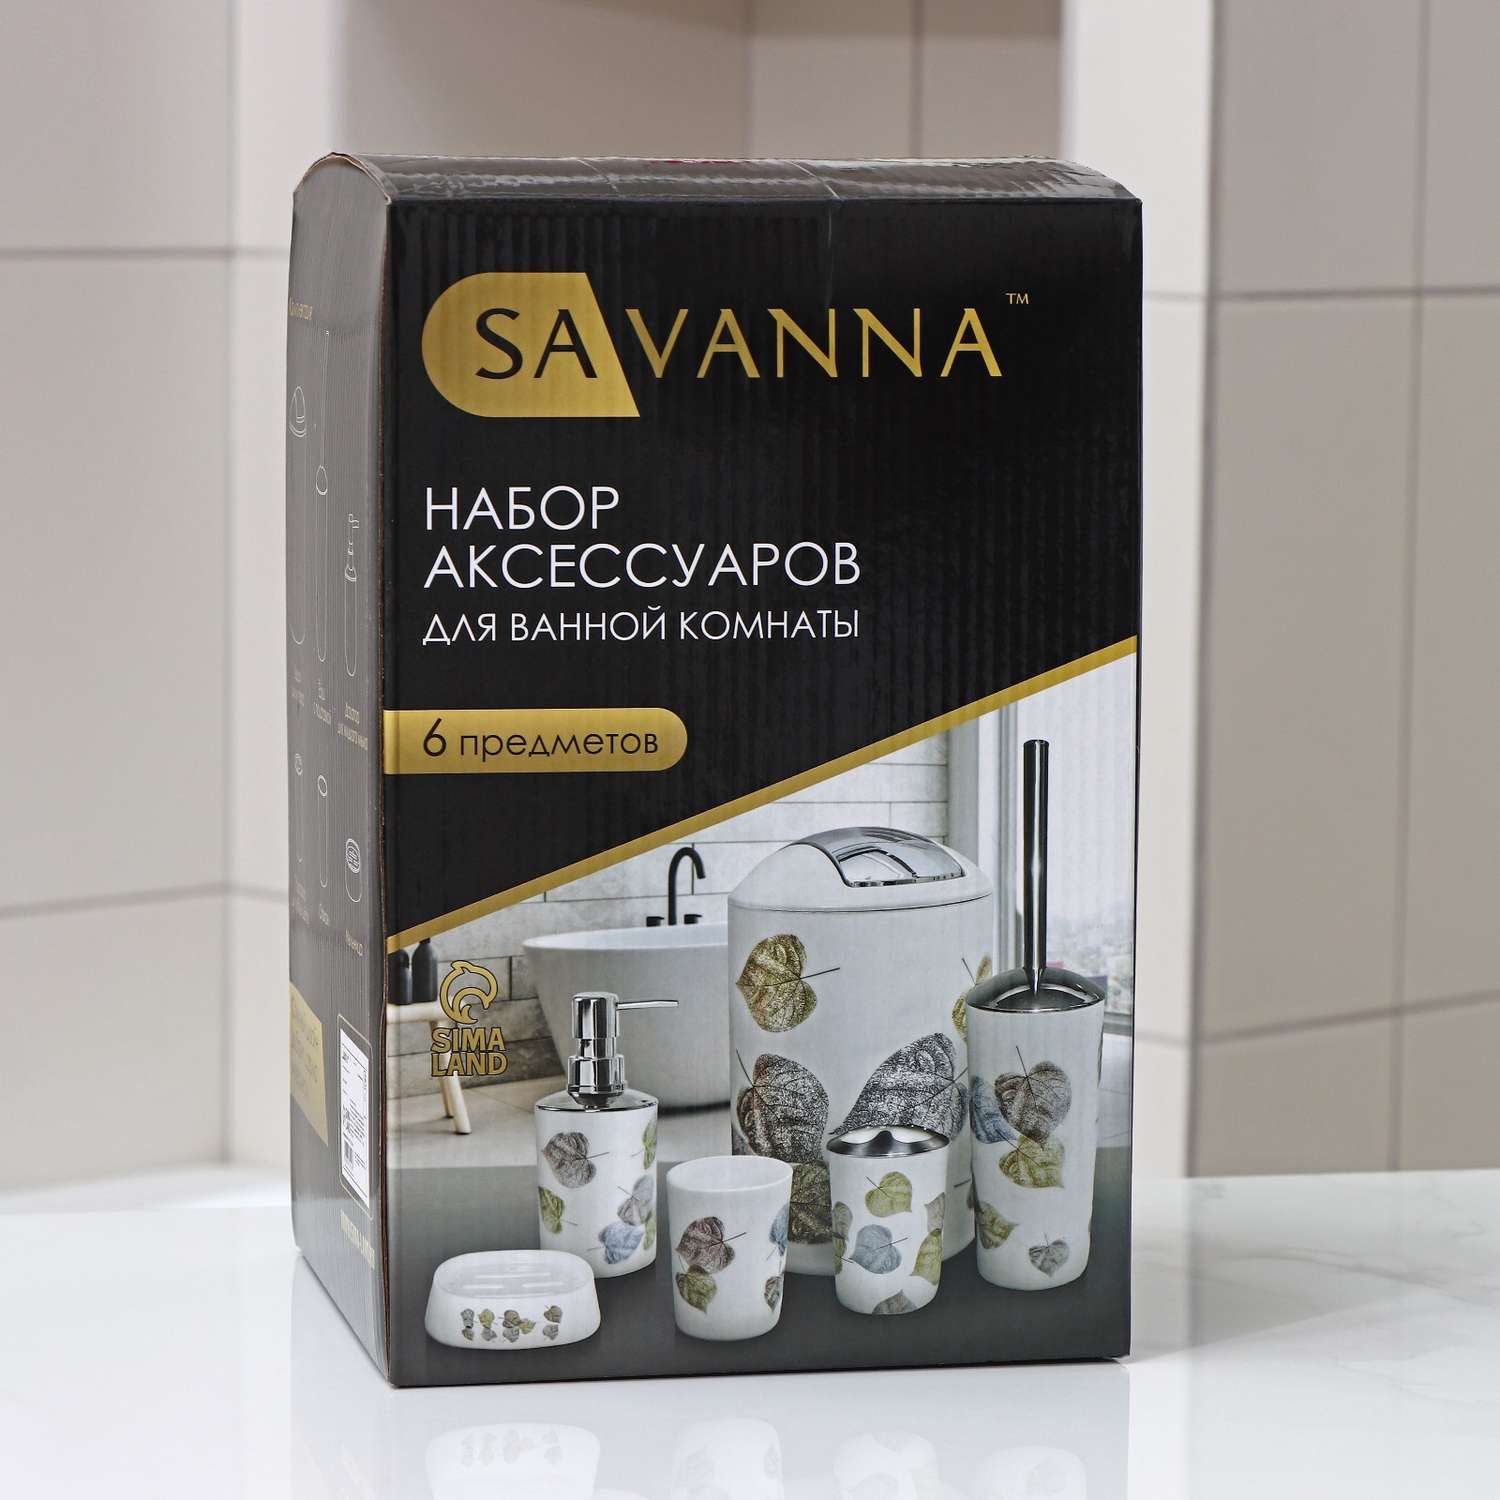 Набор SAVANNA аксессуаров для ванной комнаты «Бриз» 6 предметов (дозатор мыльница 2 стакана ёршик ведро) - фото 7